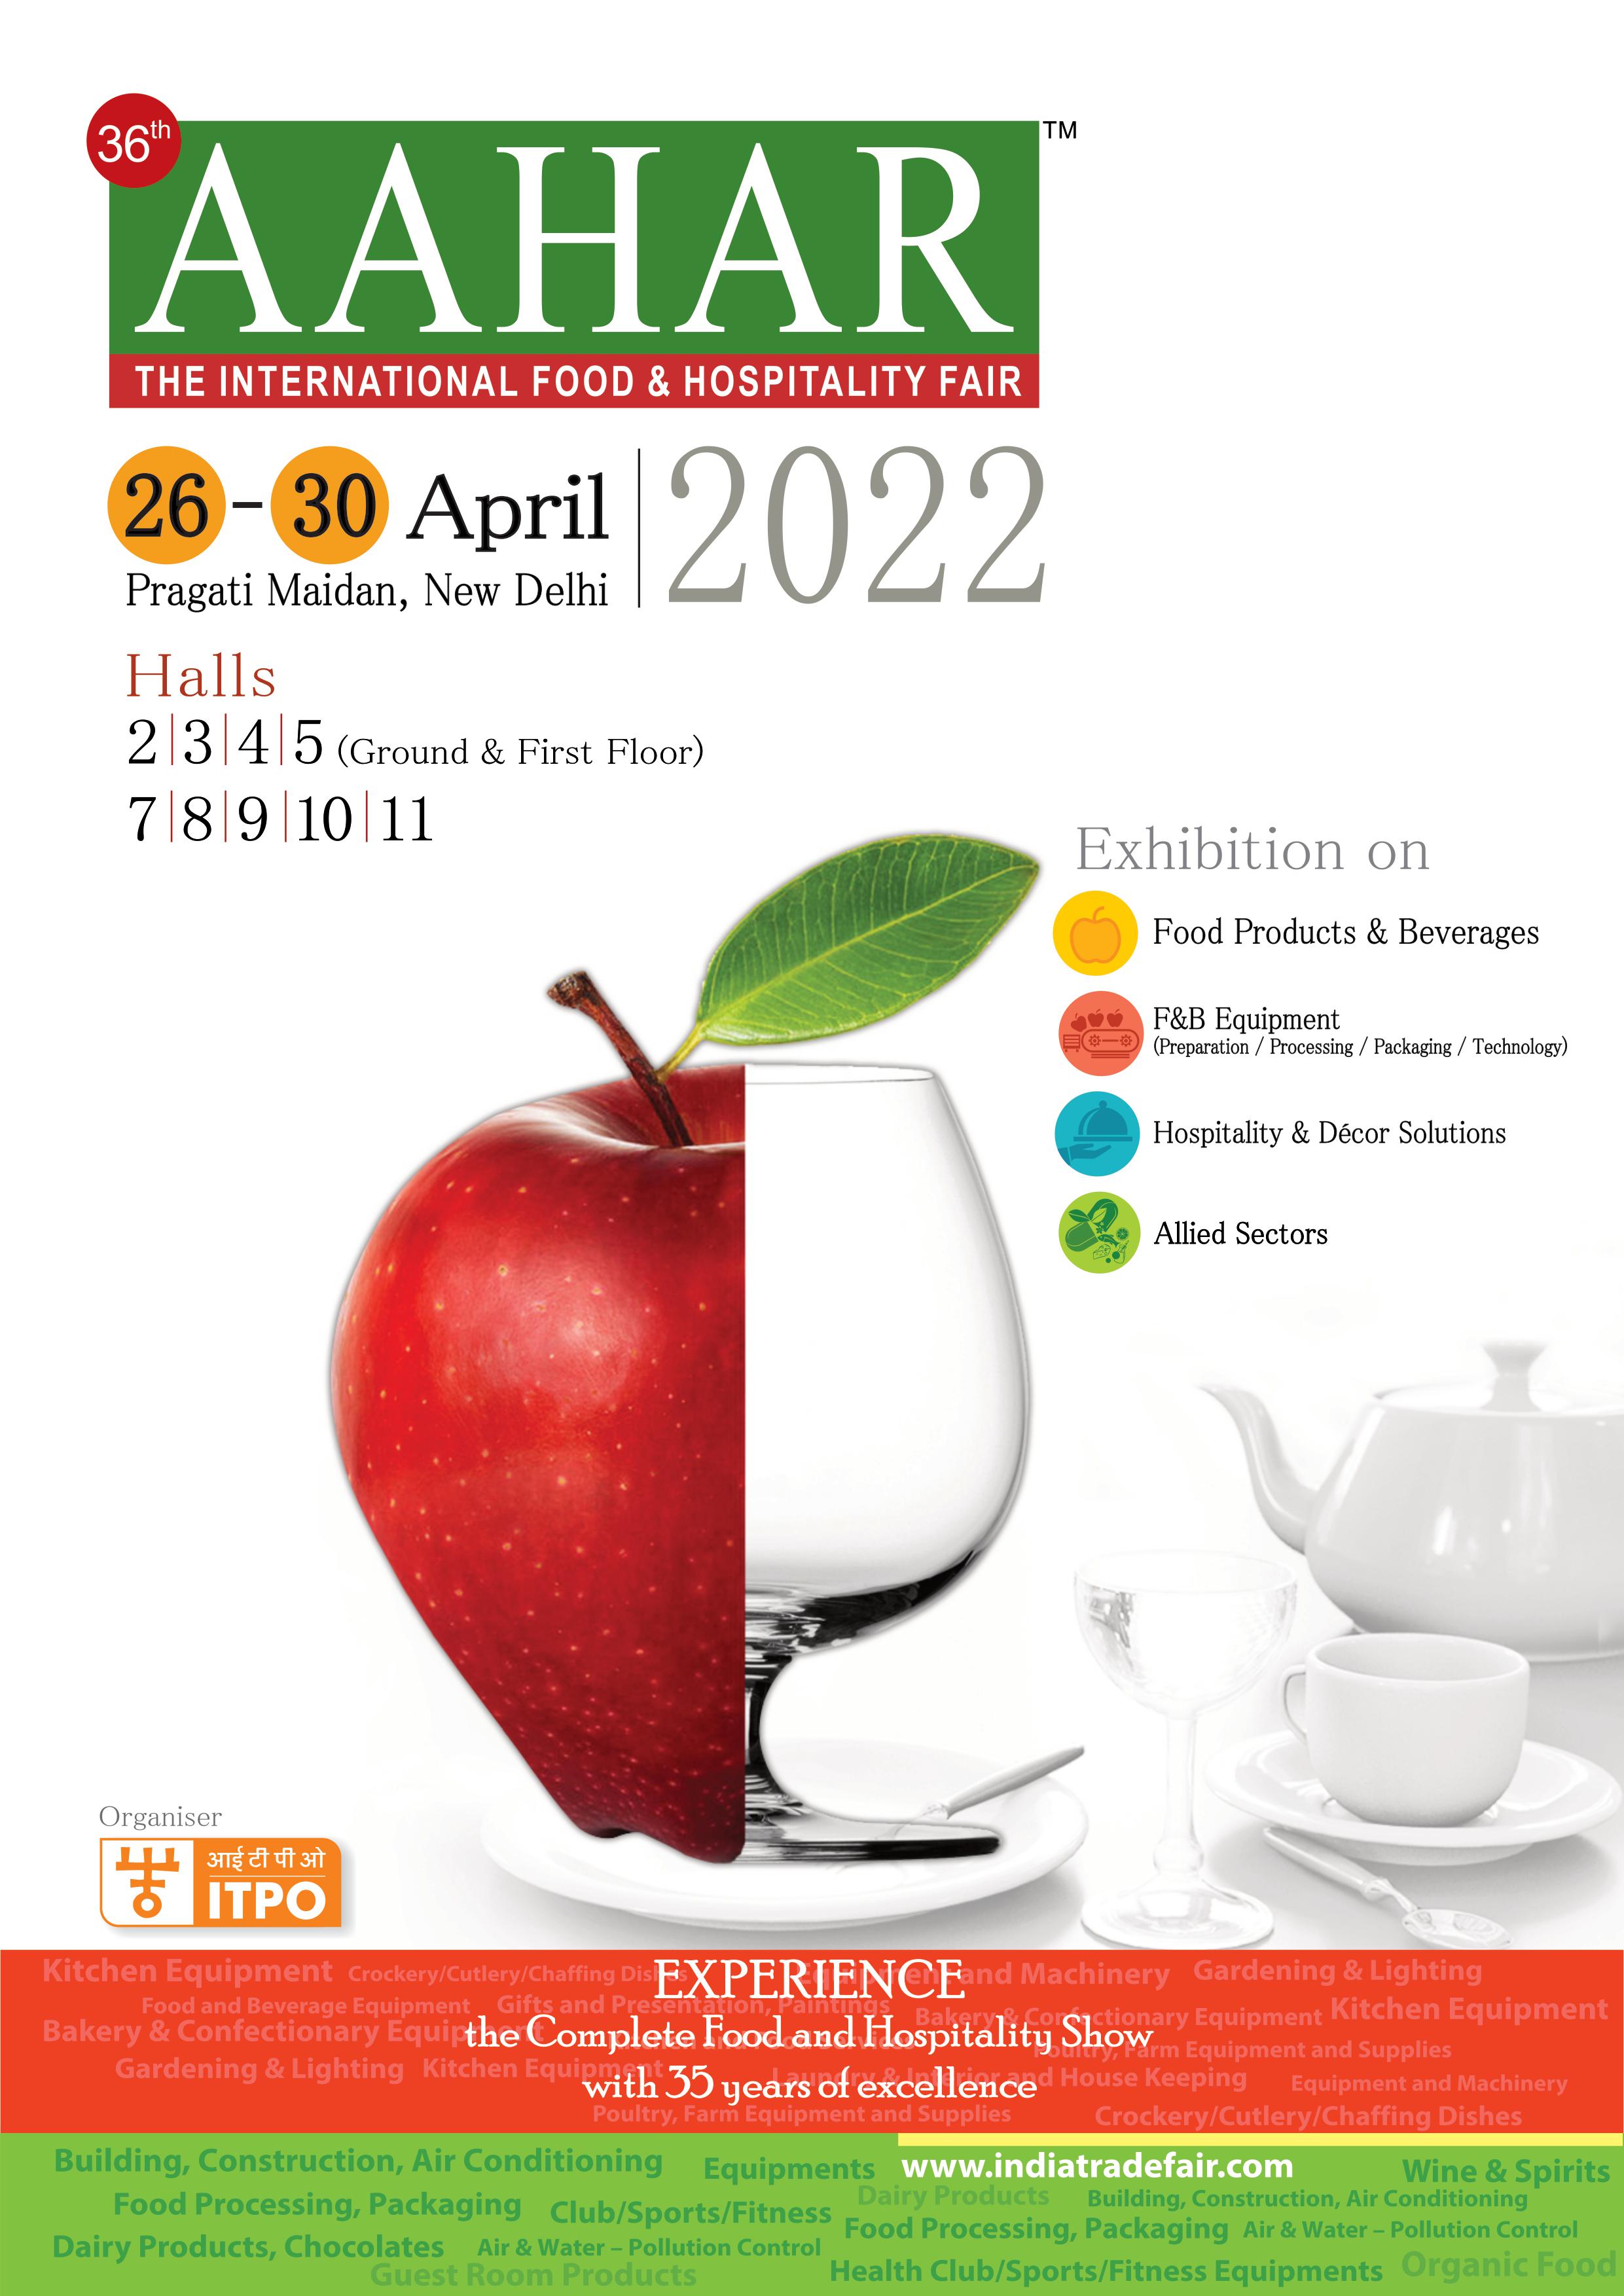 AAHAR International Food & Hospitality Fair 2022